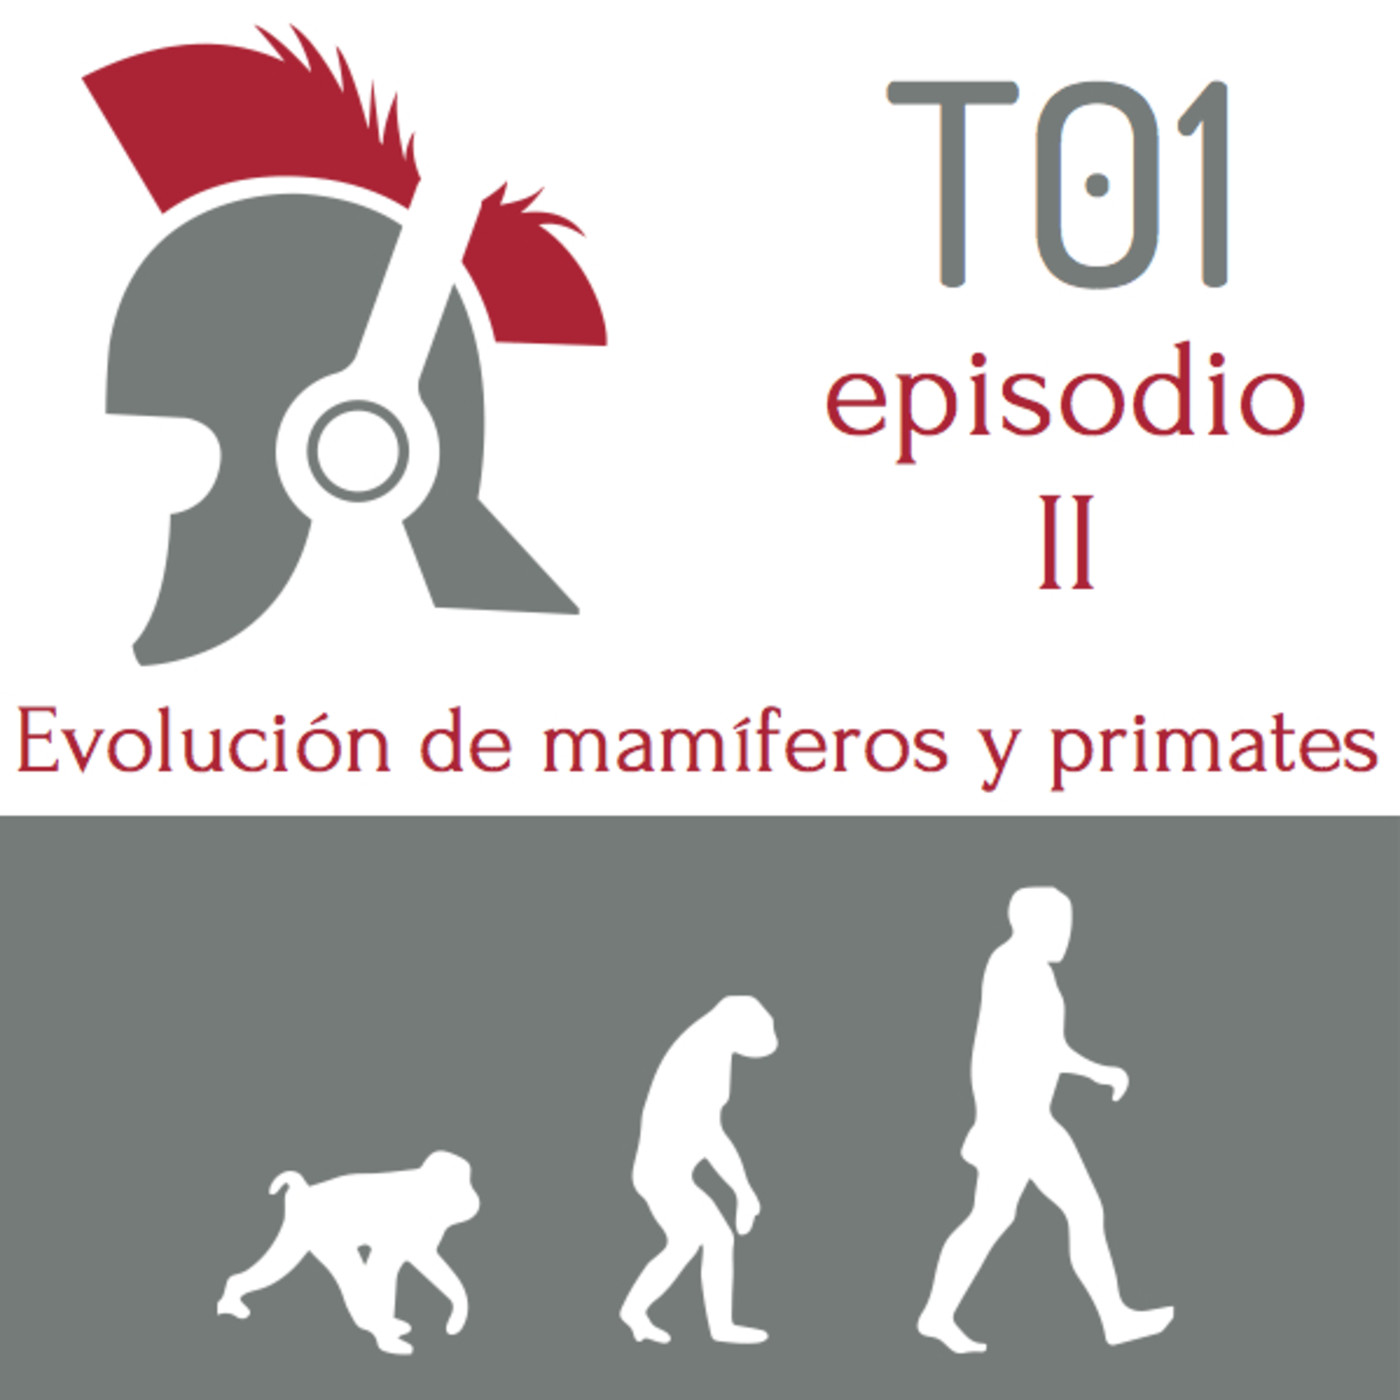 La evolucion de los mamiferos y de los primates